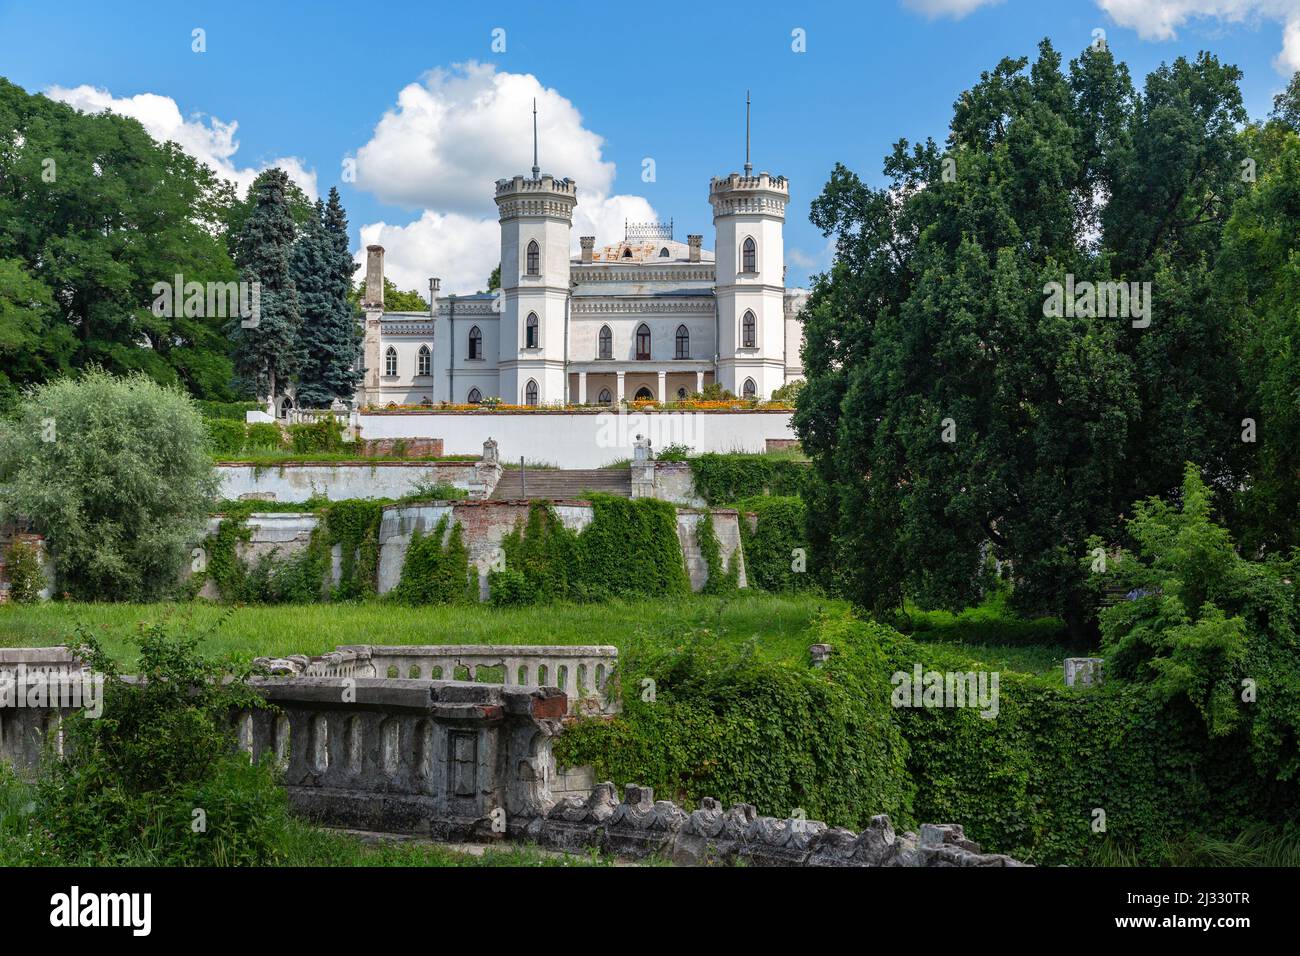 SHAROVKA, UCRAINA - 24 LUGLIO 2021: Questo è il parco e il palazzo della tenuta di Sharovka (19th secolo) in stile neogotico. Foto Stock